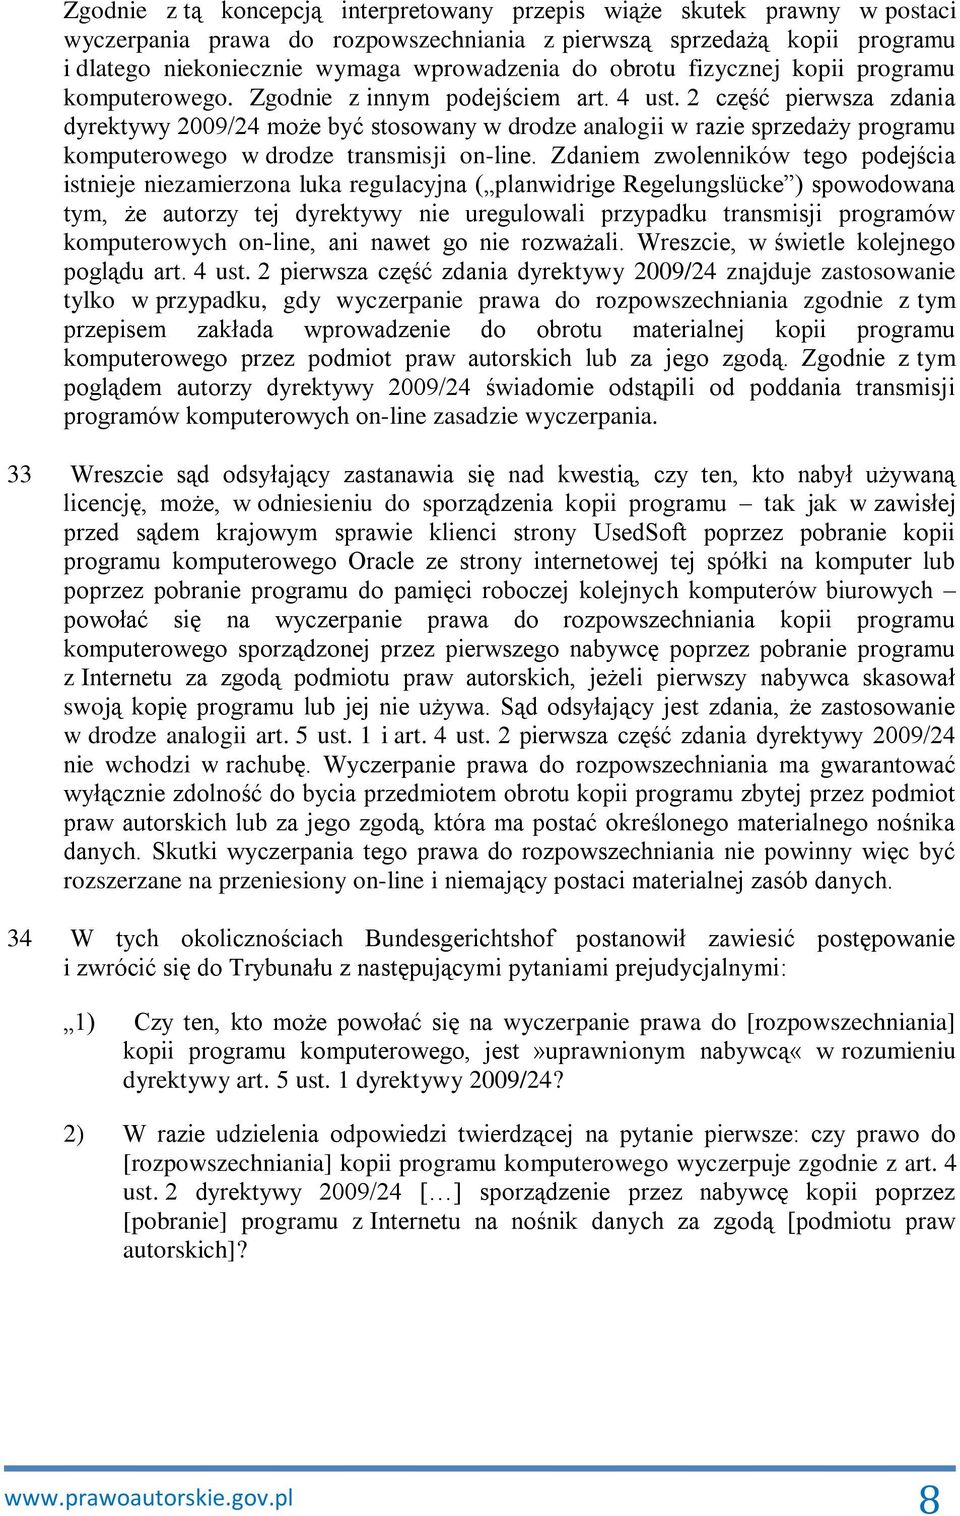 2 część pierwsza zdania dyrektywy 2009/24 może być stosowany w drodze analogii w razie sprzedaży programu komputerowego w drodze transmisji on-line.